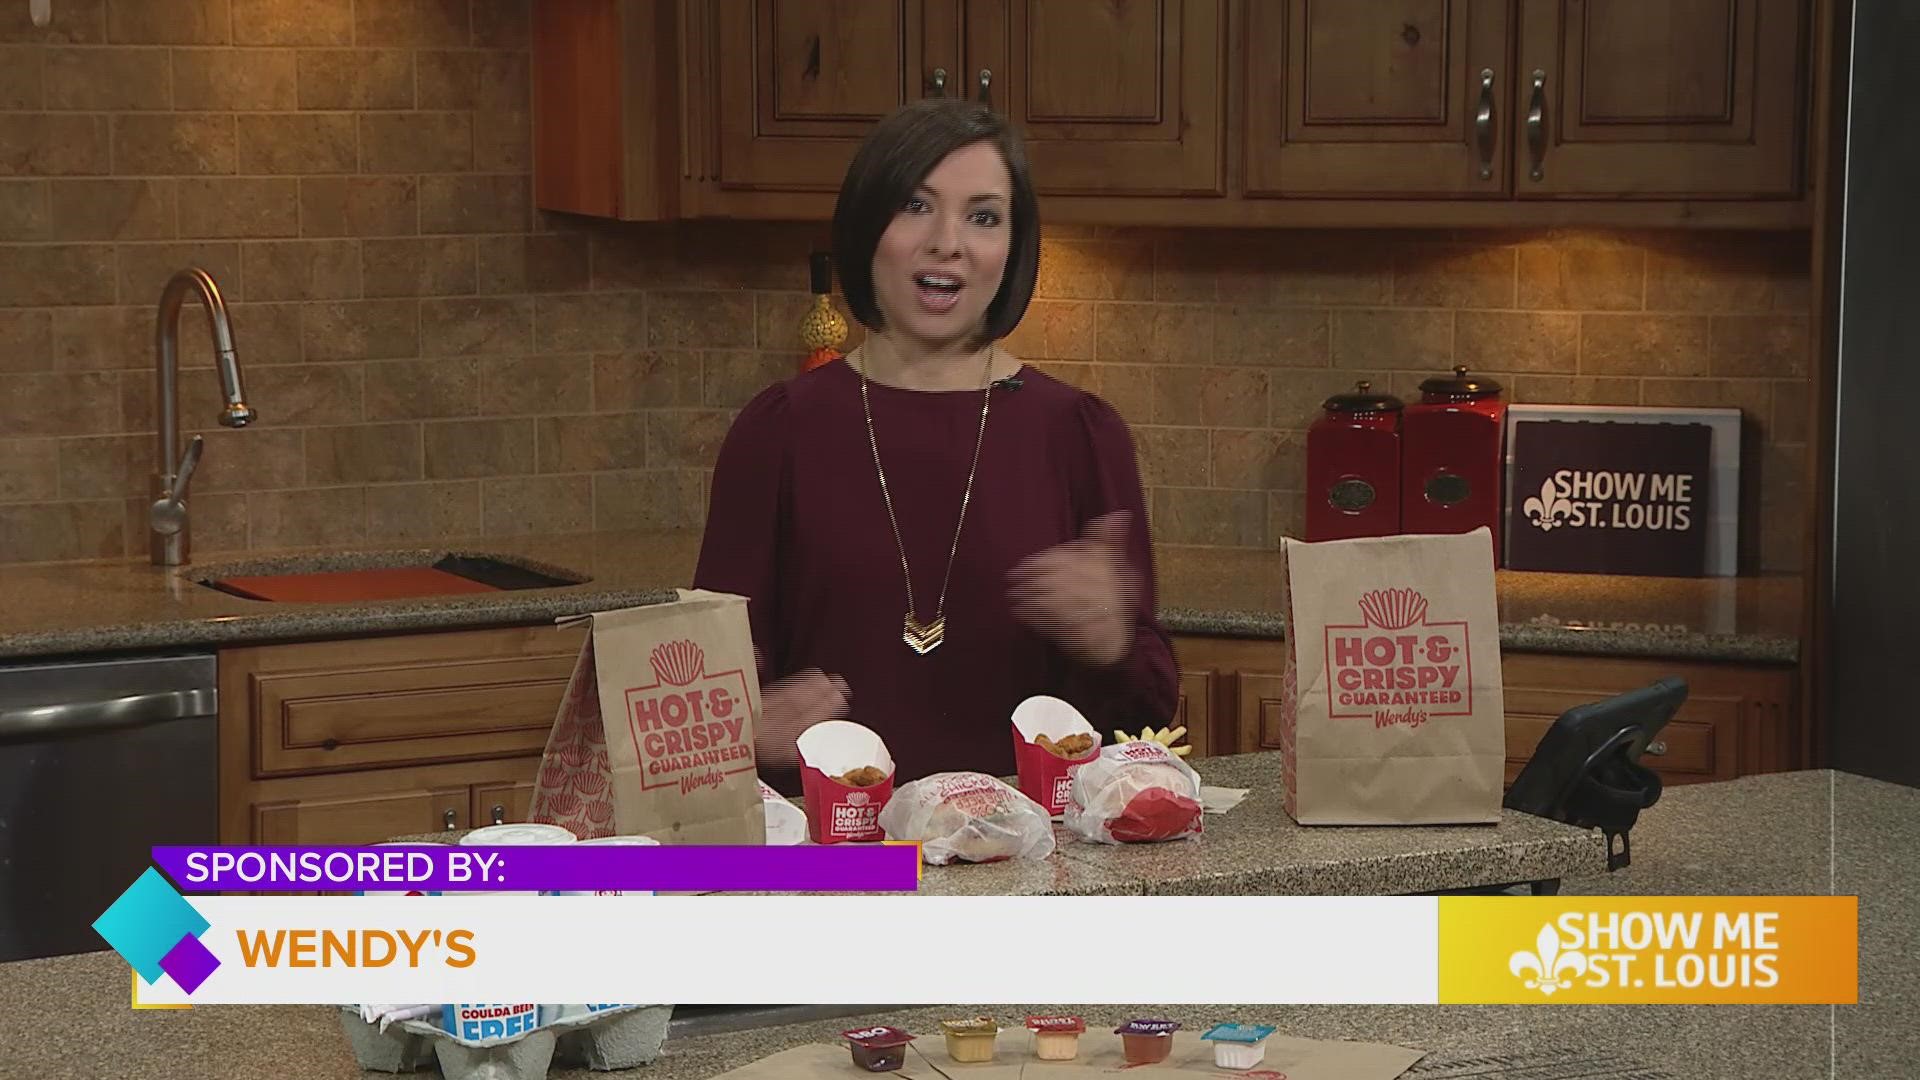 NRN video of the week: Wendy's promotes $5 Biggie Bag deal